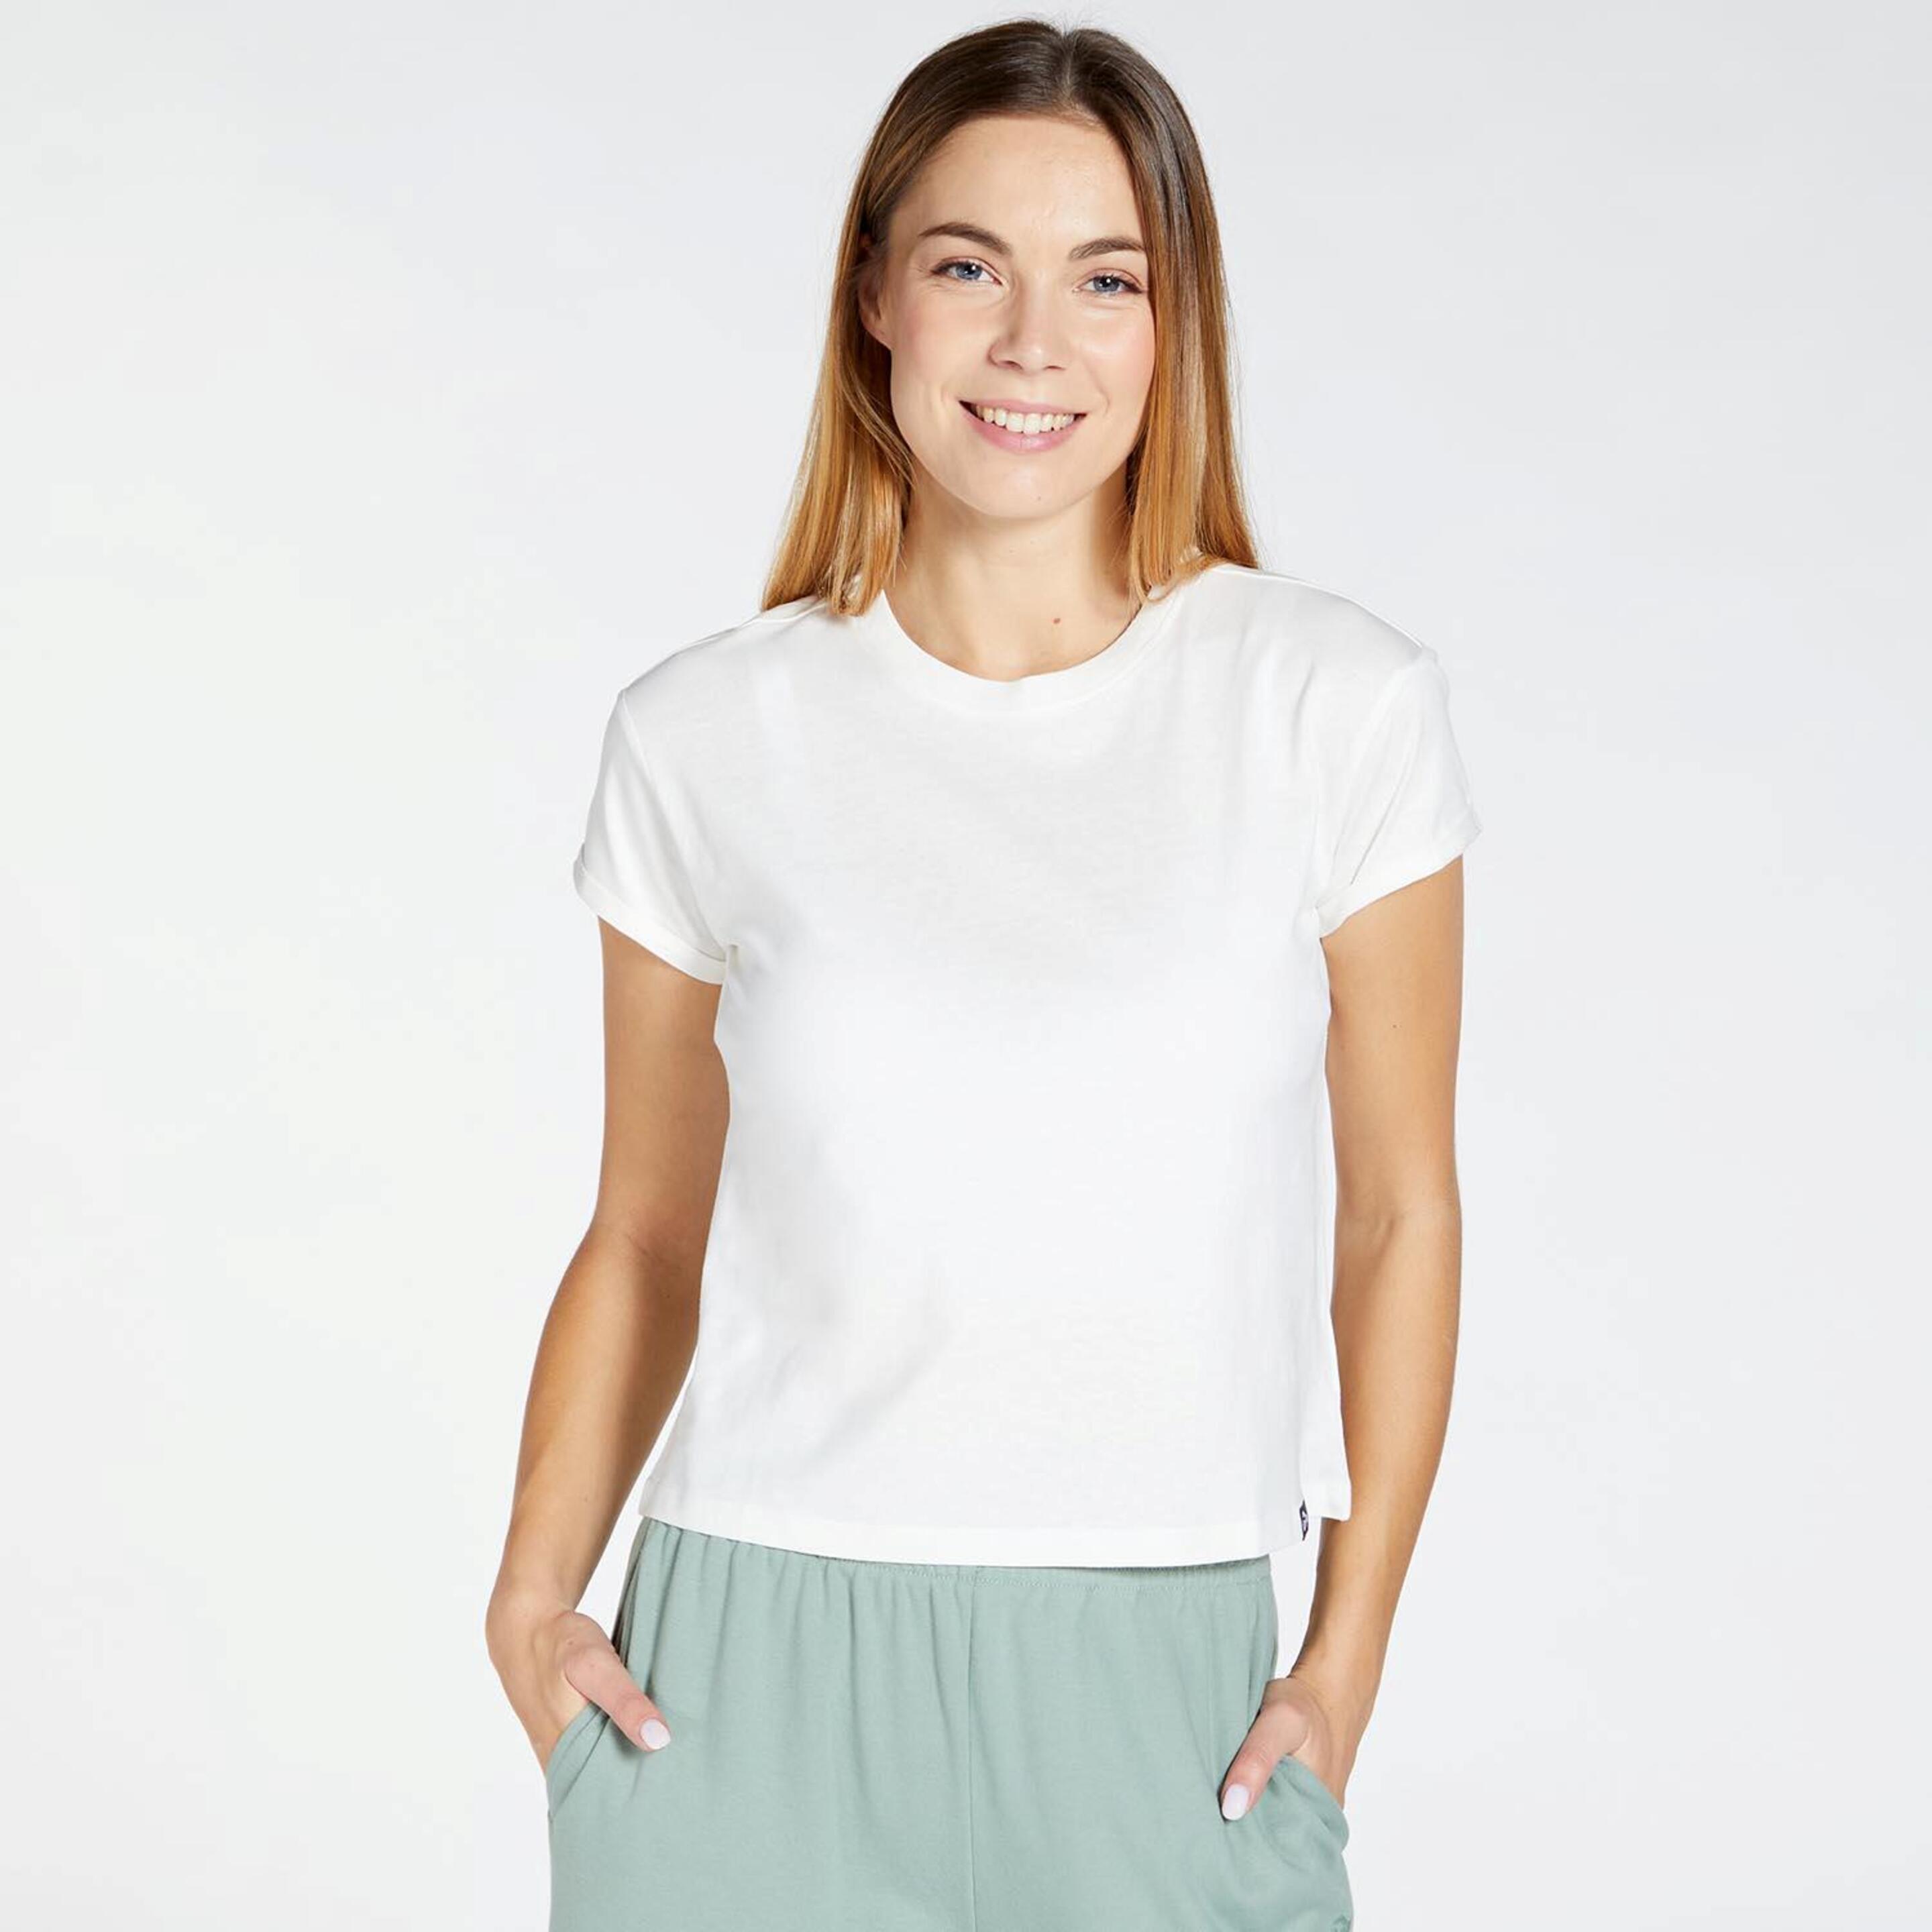 Up Basic - blanco - Camiseta Mujer